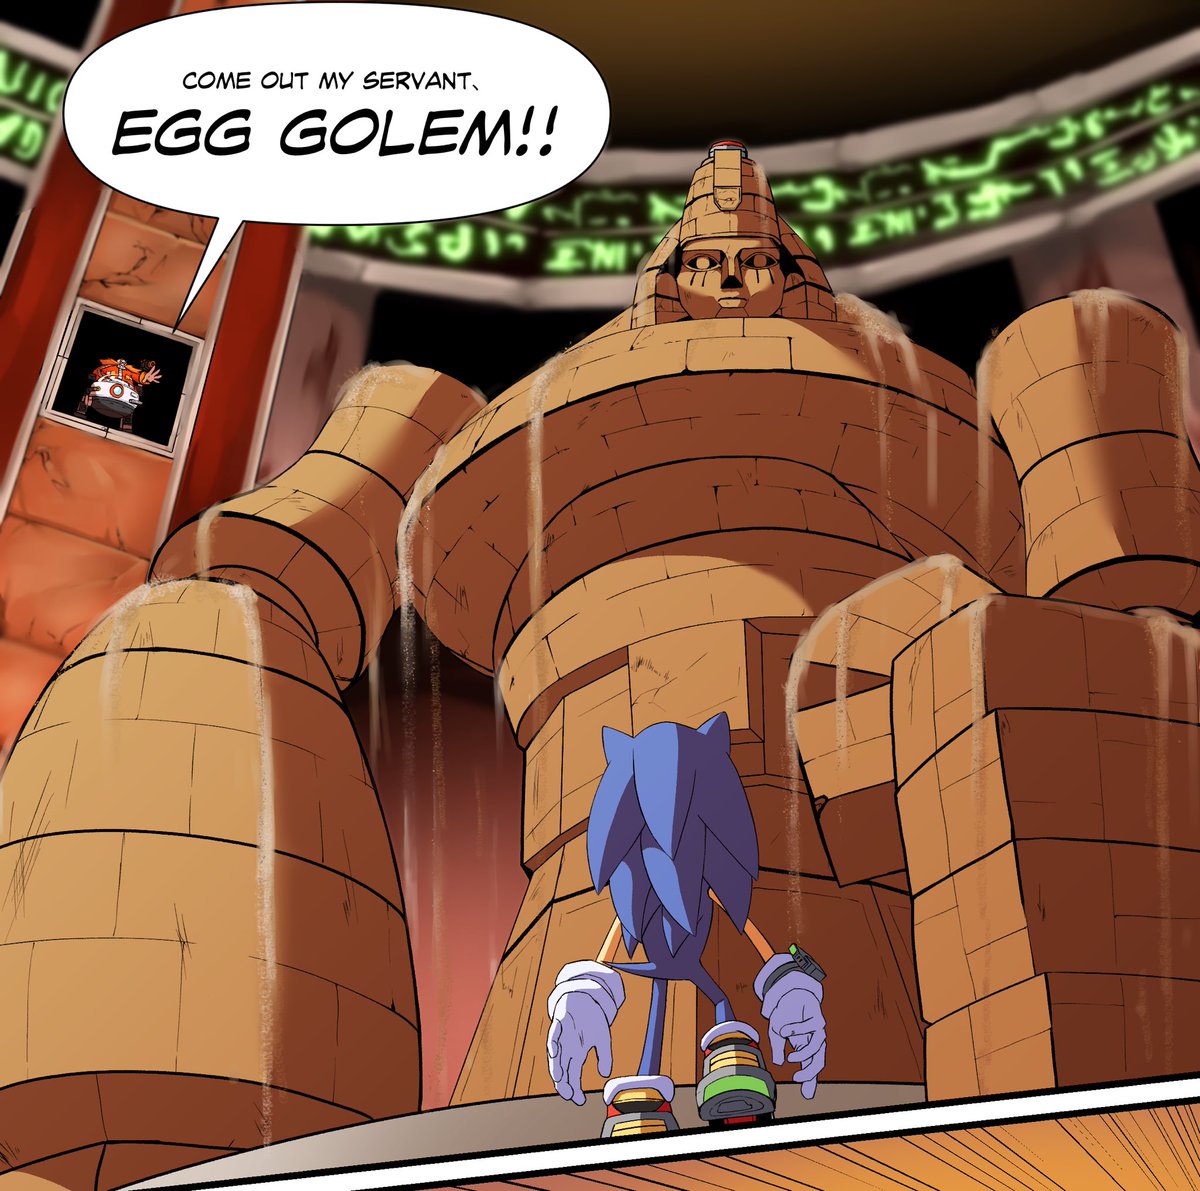 VS ancient giant
#SonicAdventure2 